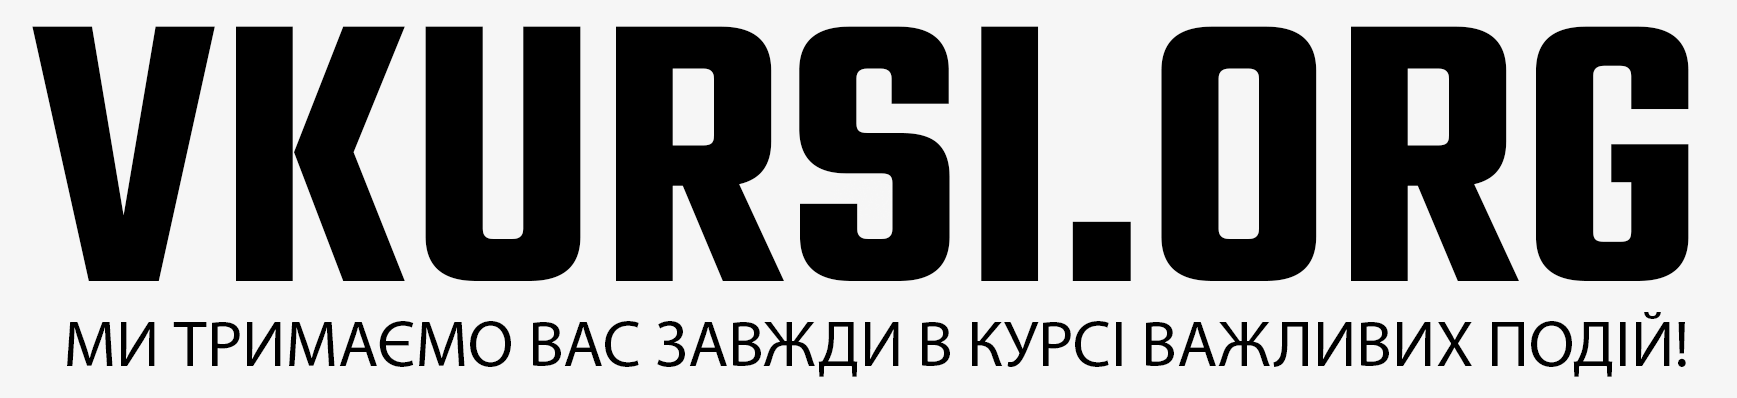 Vkursi.org